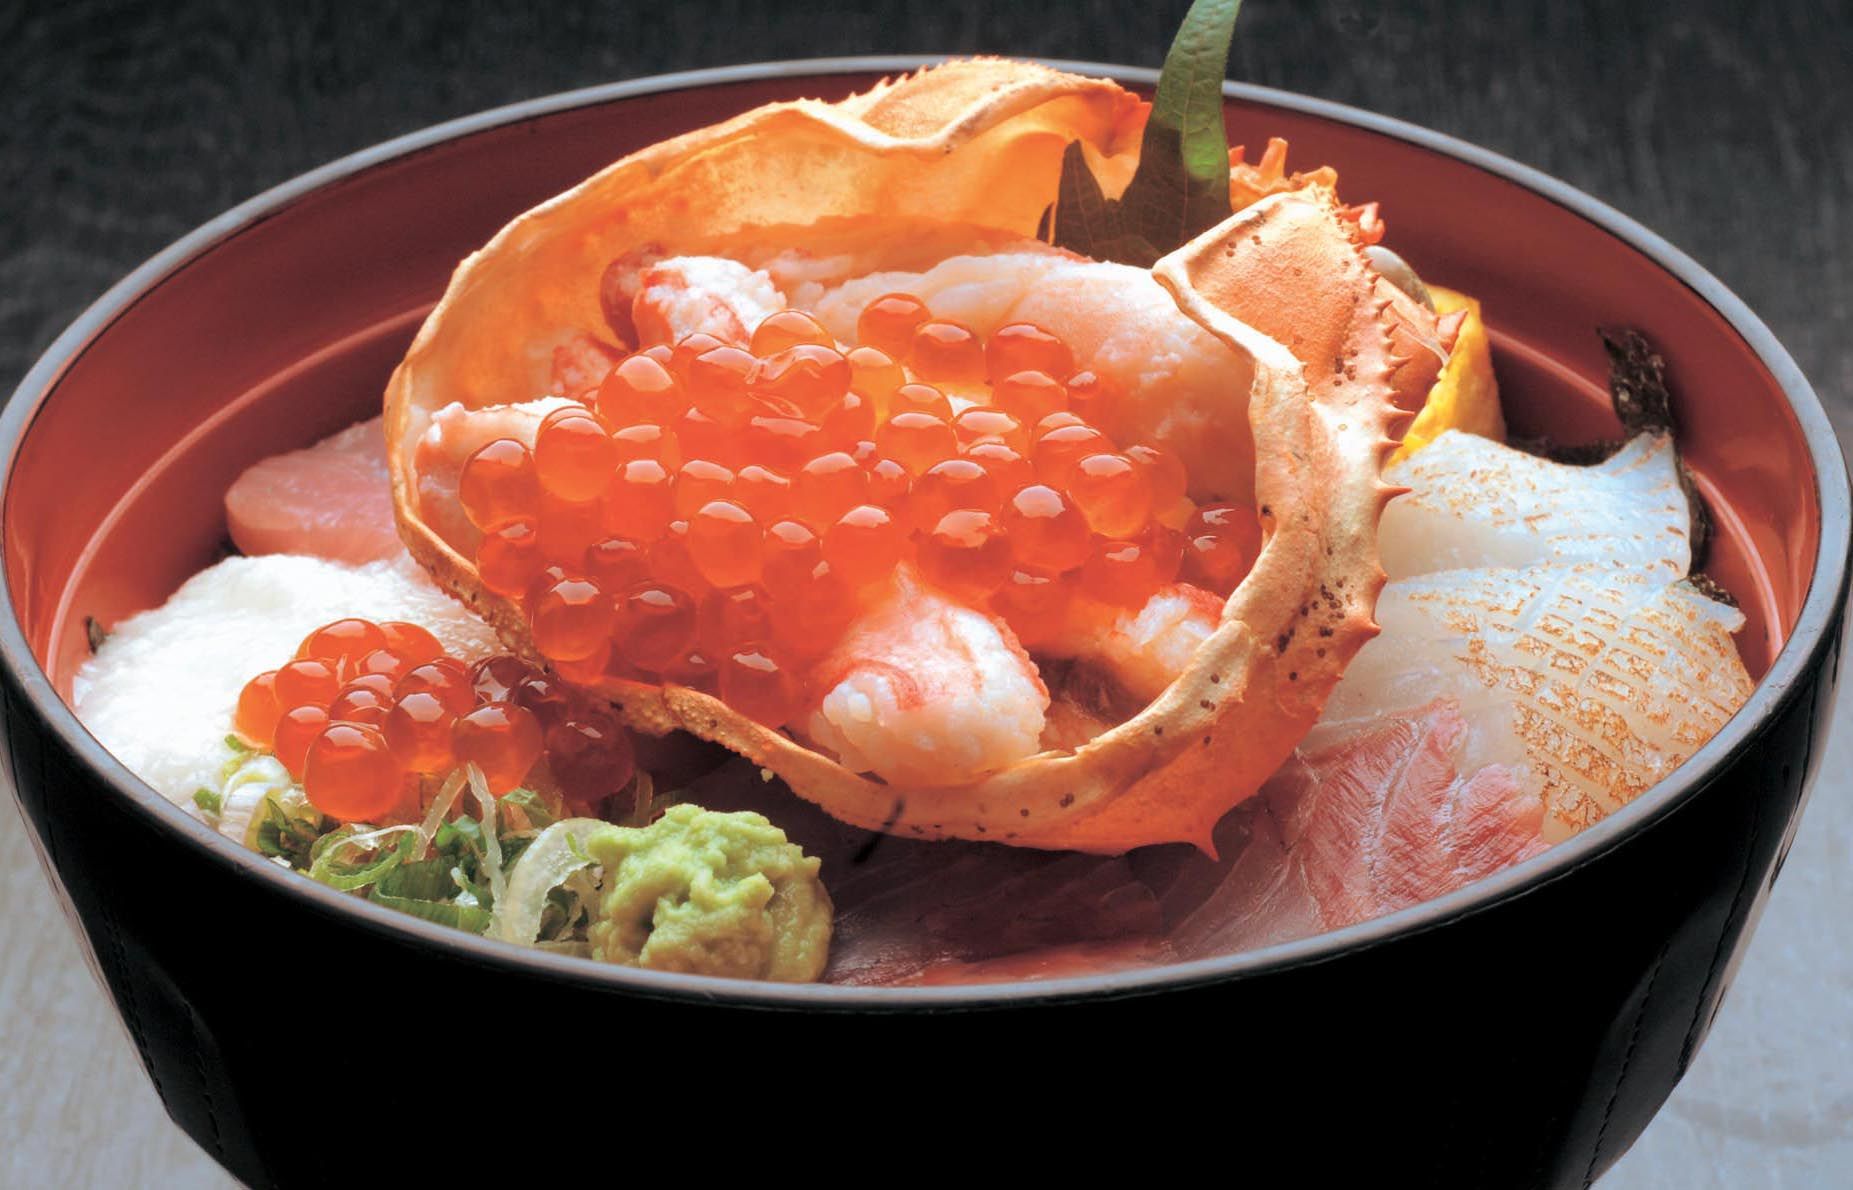 著名的市場餐廳 Karoko 以合理的價格供應新鮮的海鮮。 2,180日元的大份特製海鮮蓋飯很受歡迎。